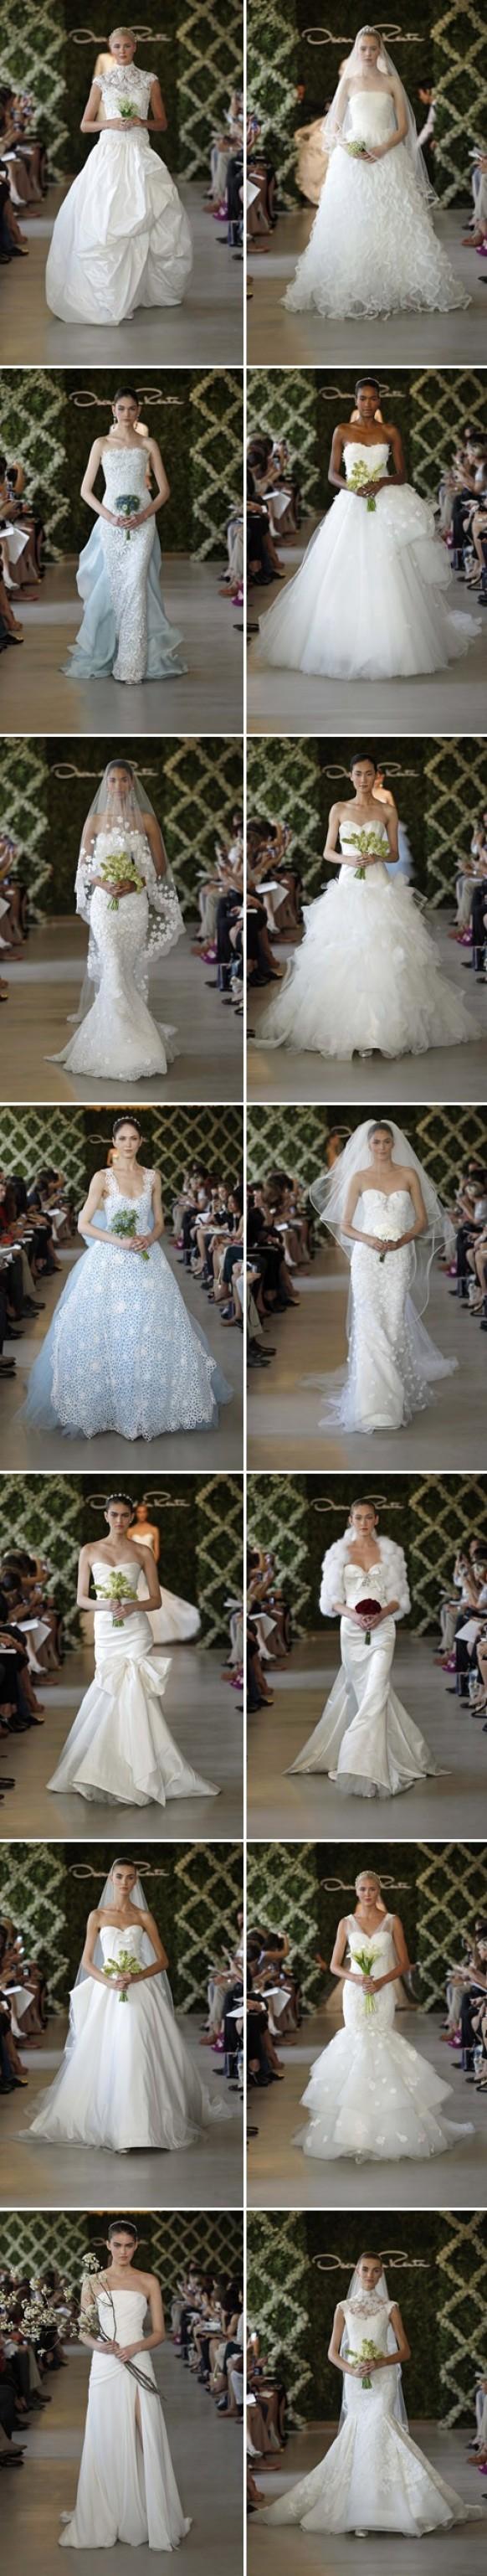 wedding photo - 2013 Свадебные платья ♥ Оскар де ла Рента Специальные свадебные платья дизайн